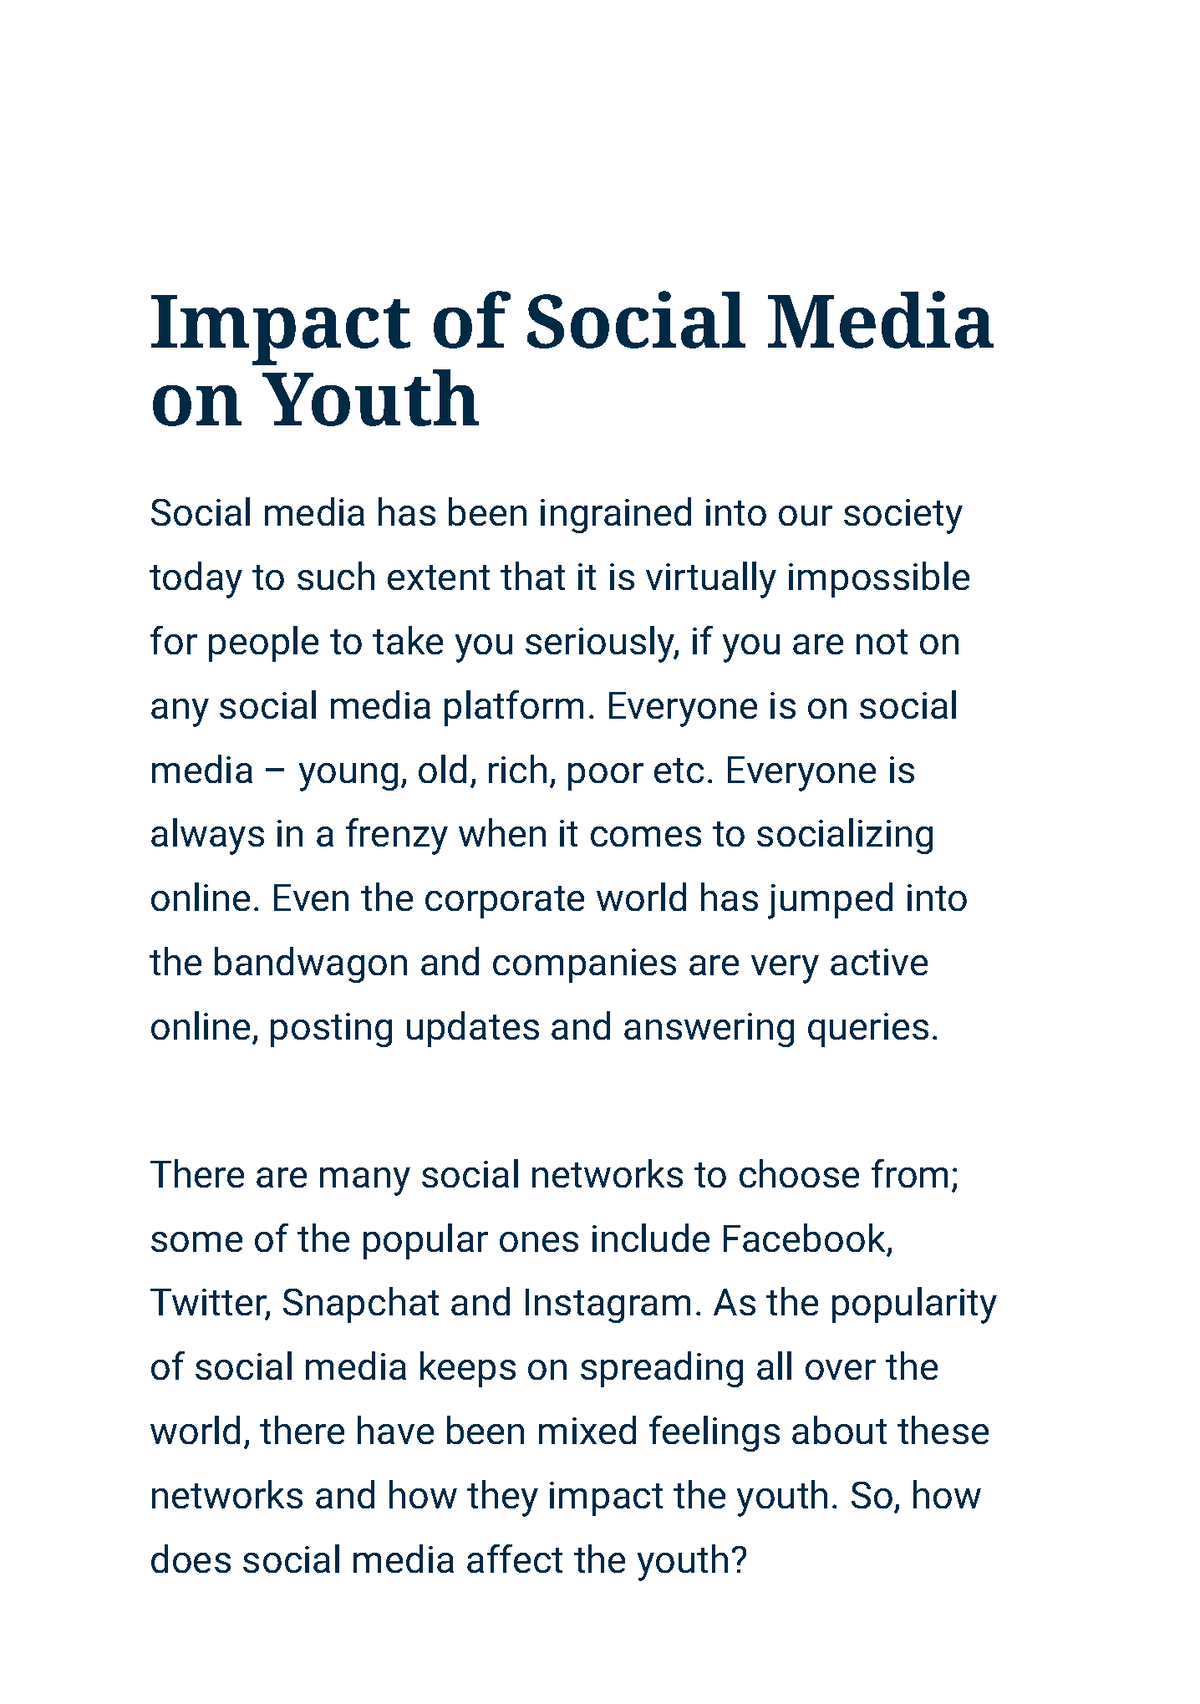 essay impact of social media